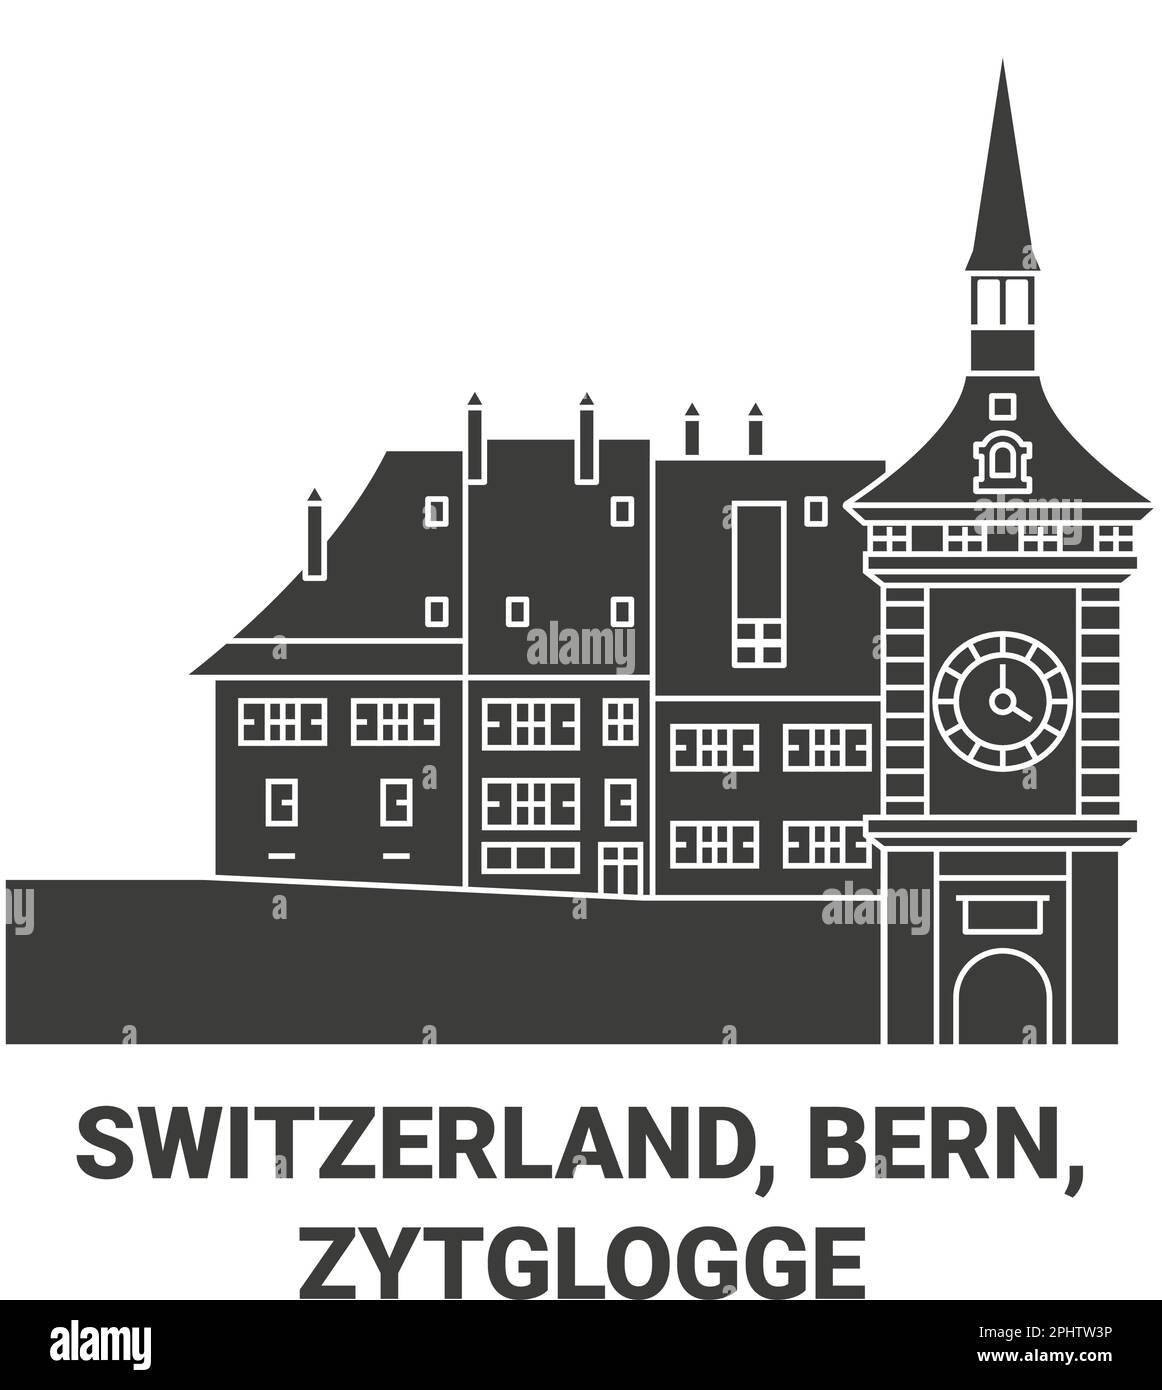 Schweiz, Bern, Zytglogge Reise-Wahrzeichen-Vektordarstellung Stock Vektor